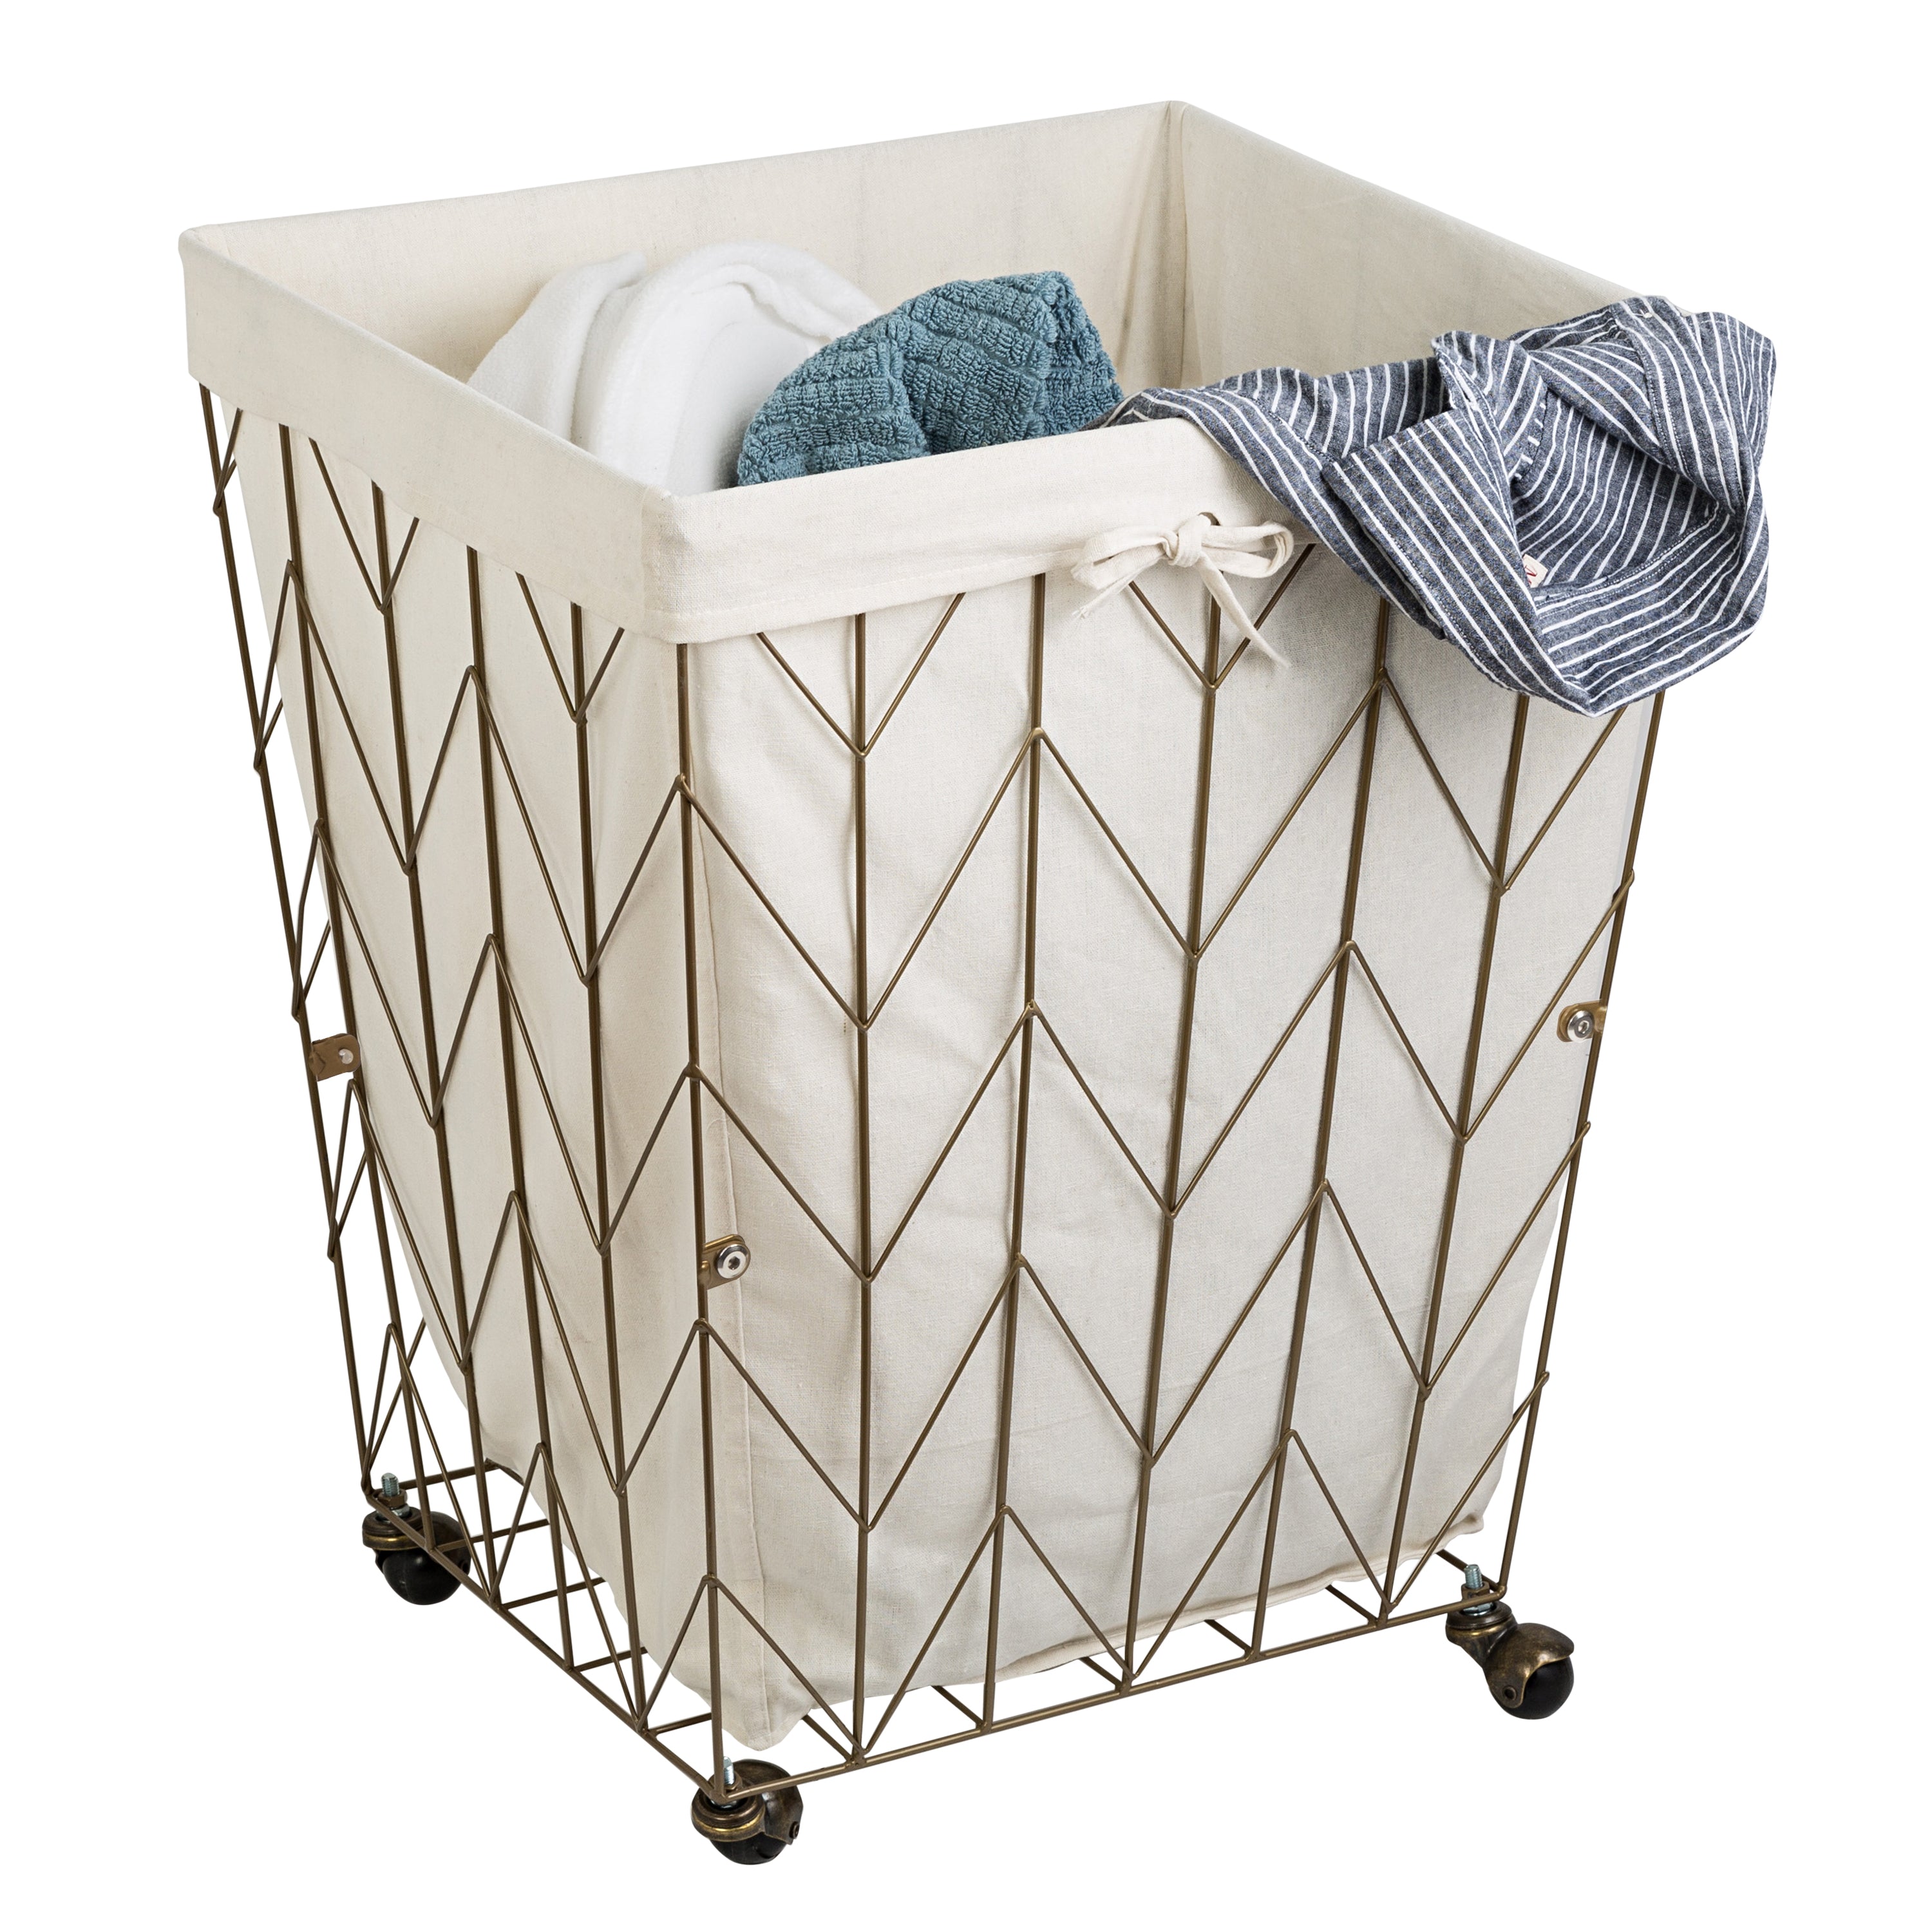 Laundry Basket